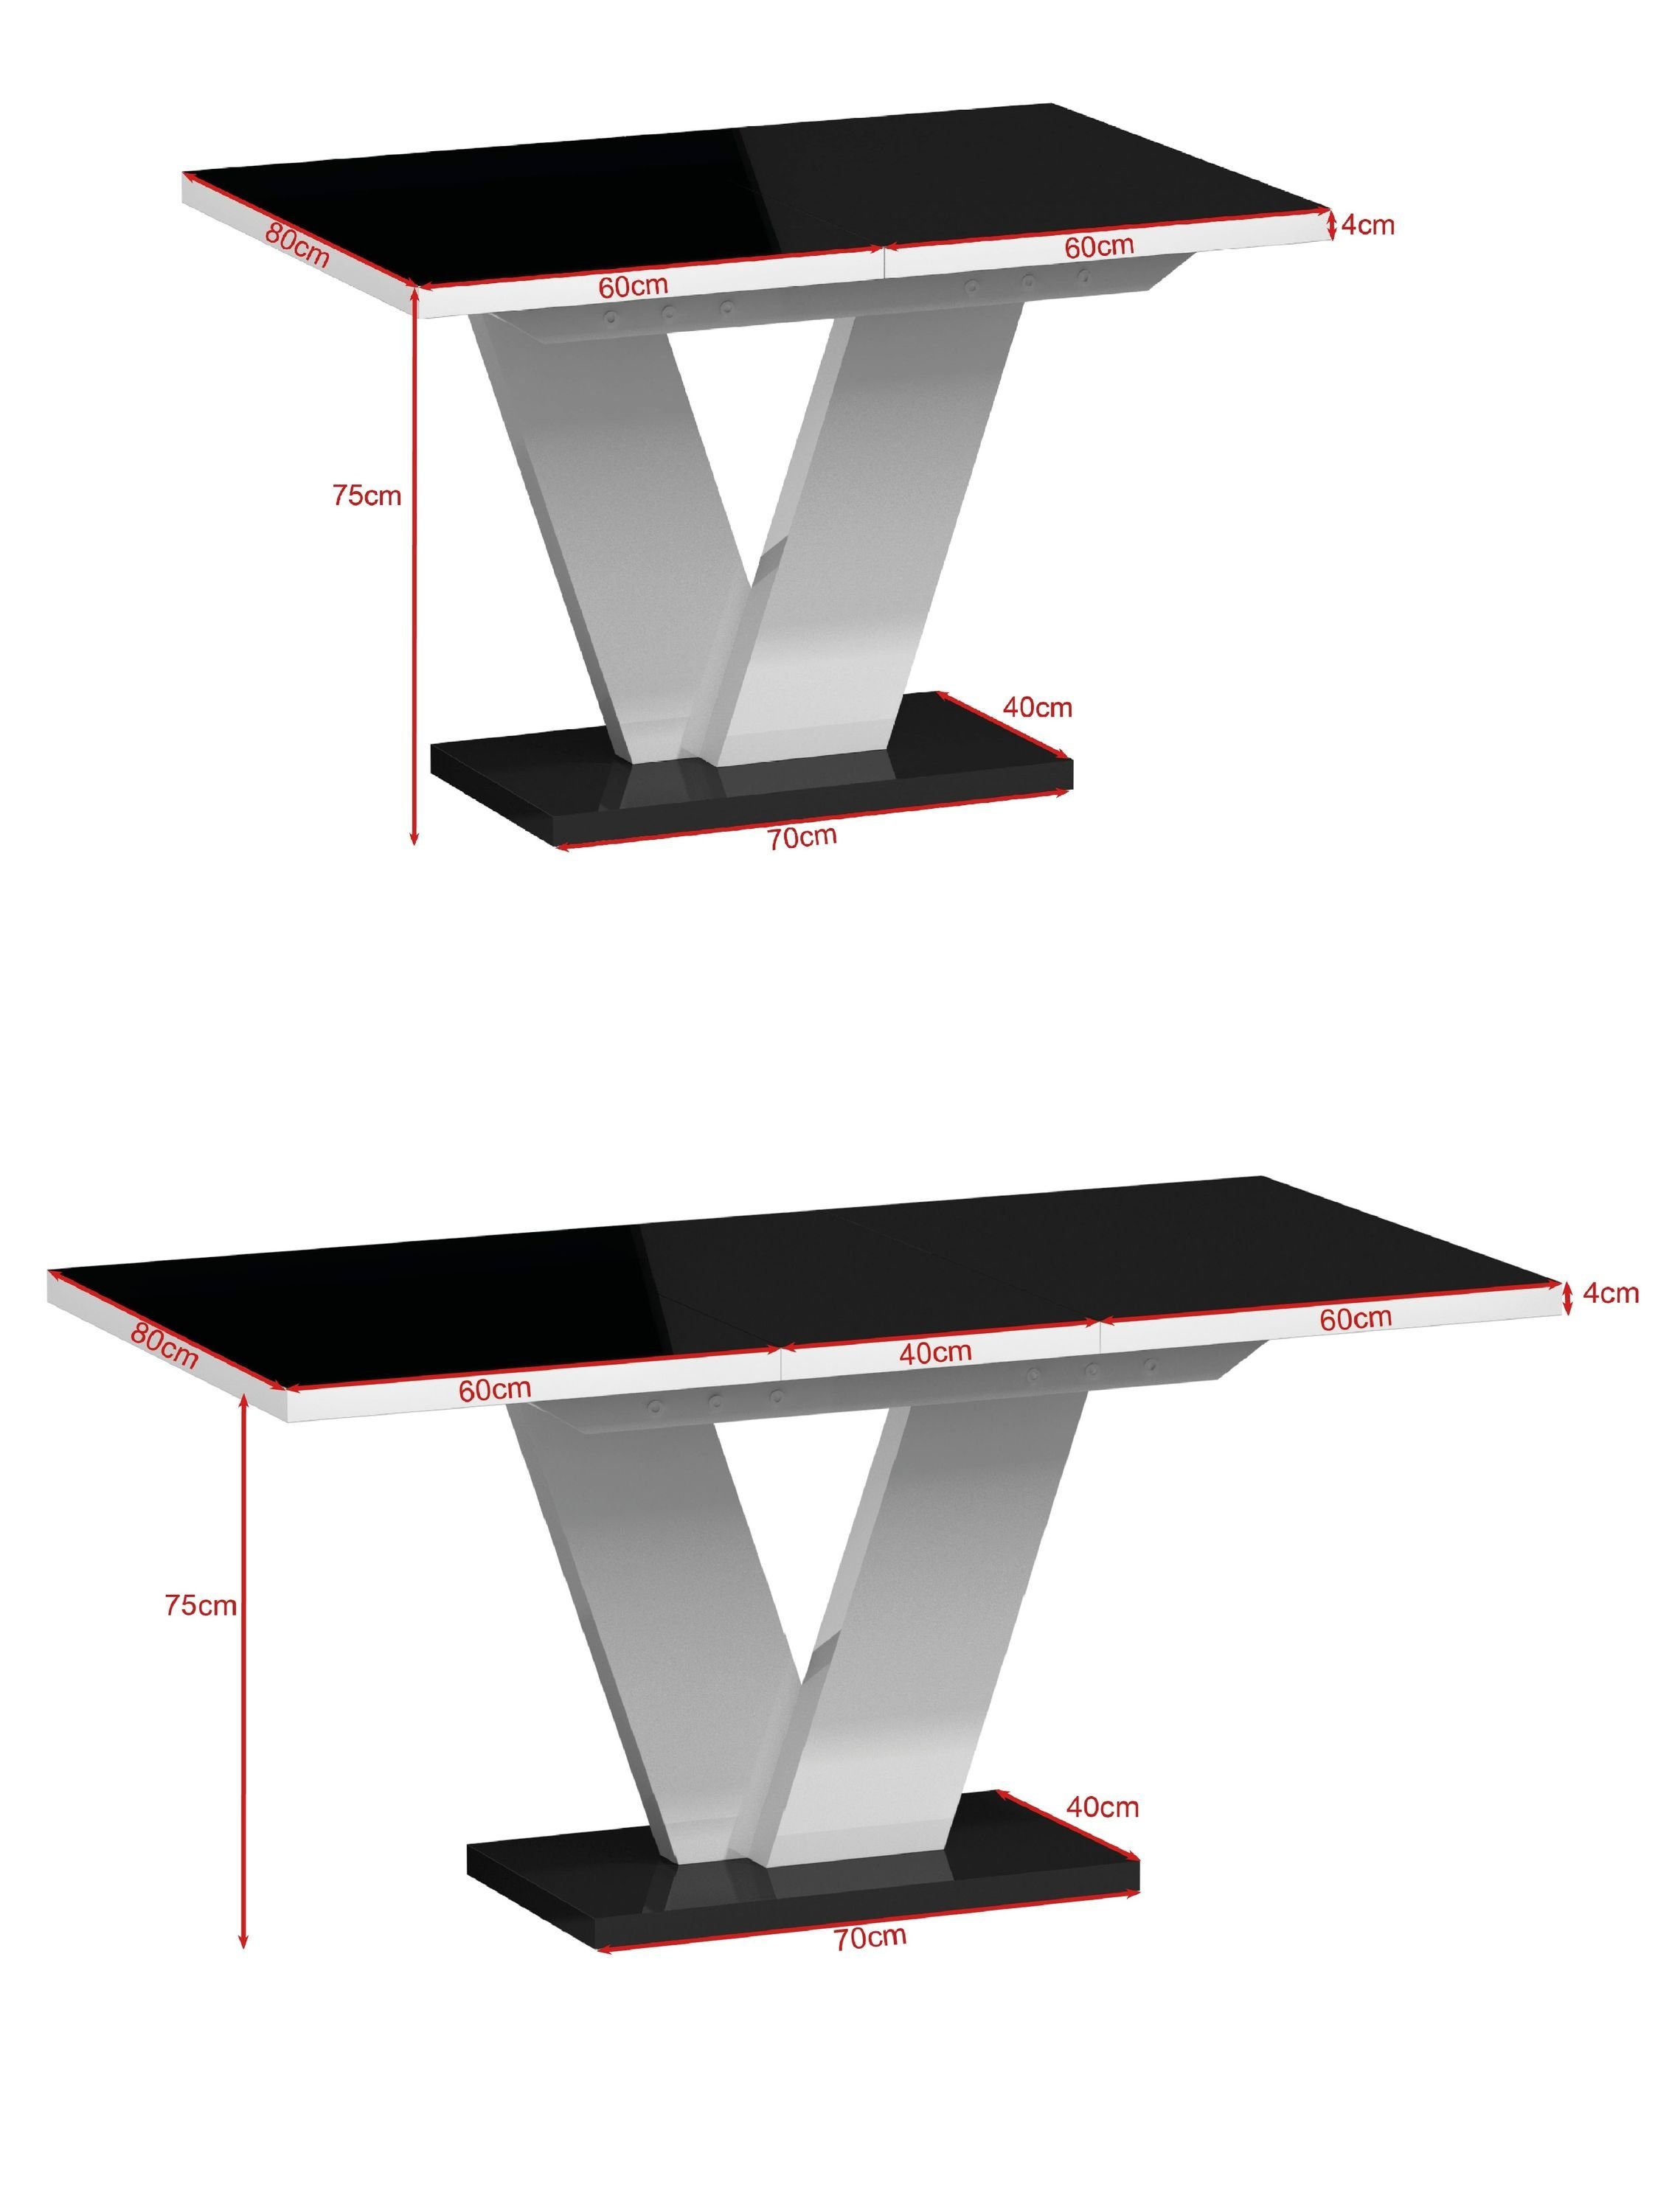 160 MA-333 Esstisch Tisch - Esstisch bis ausziehbar designimpex Schwarz Design 120 cm Eiche matt Lancelot Hochglanz